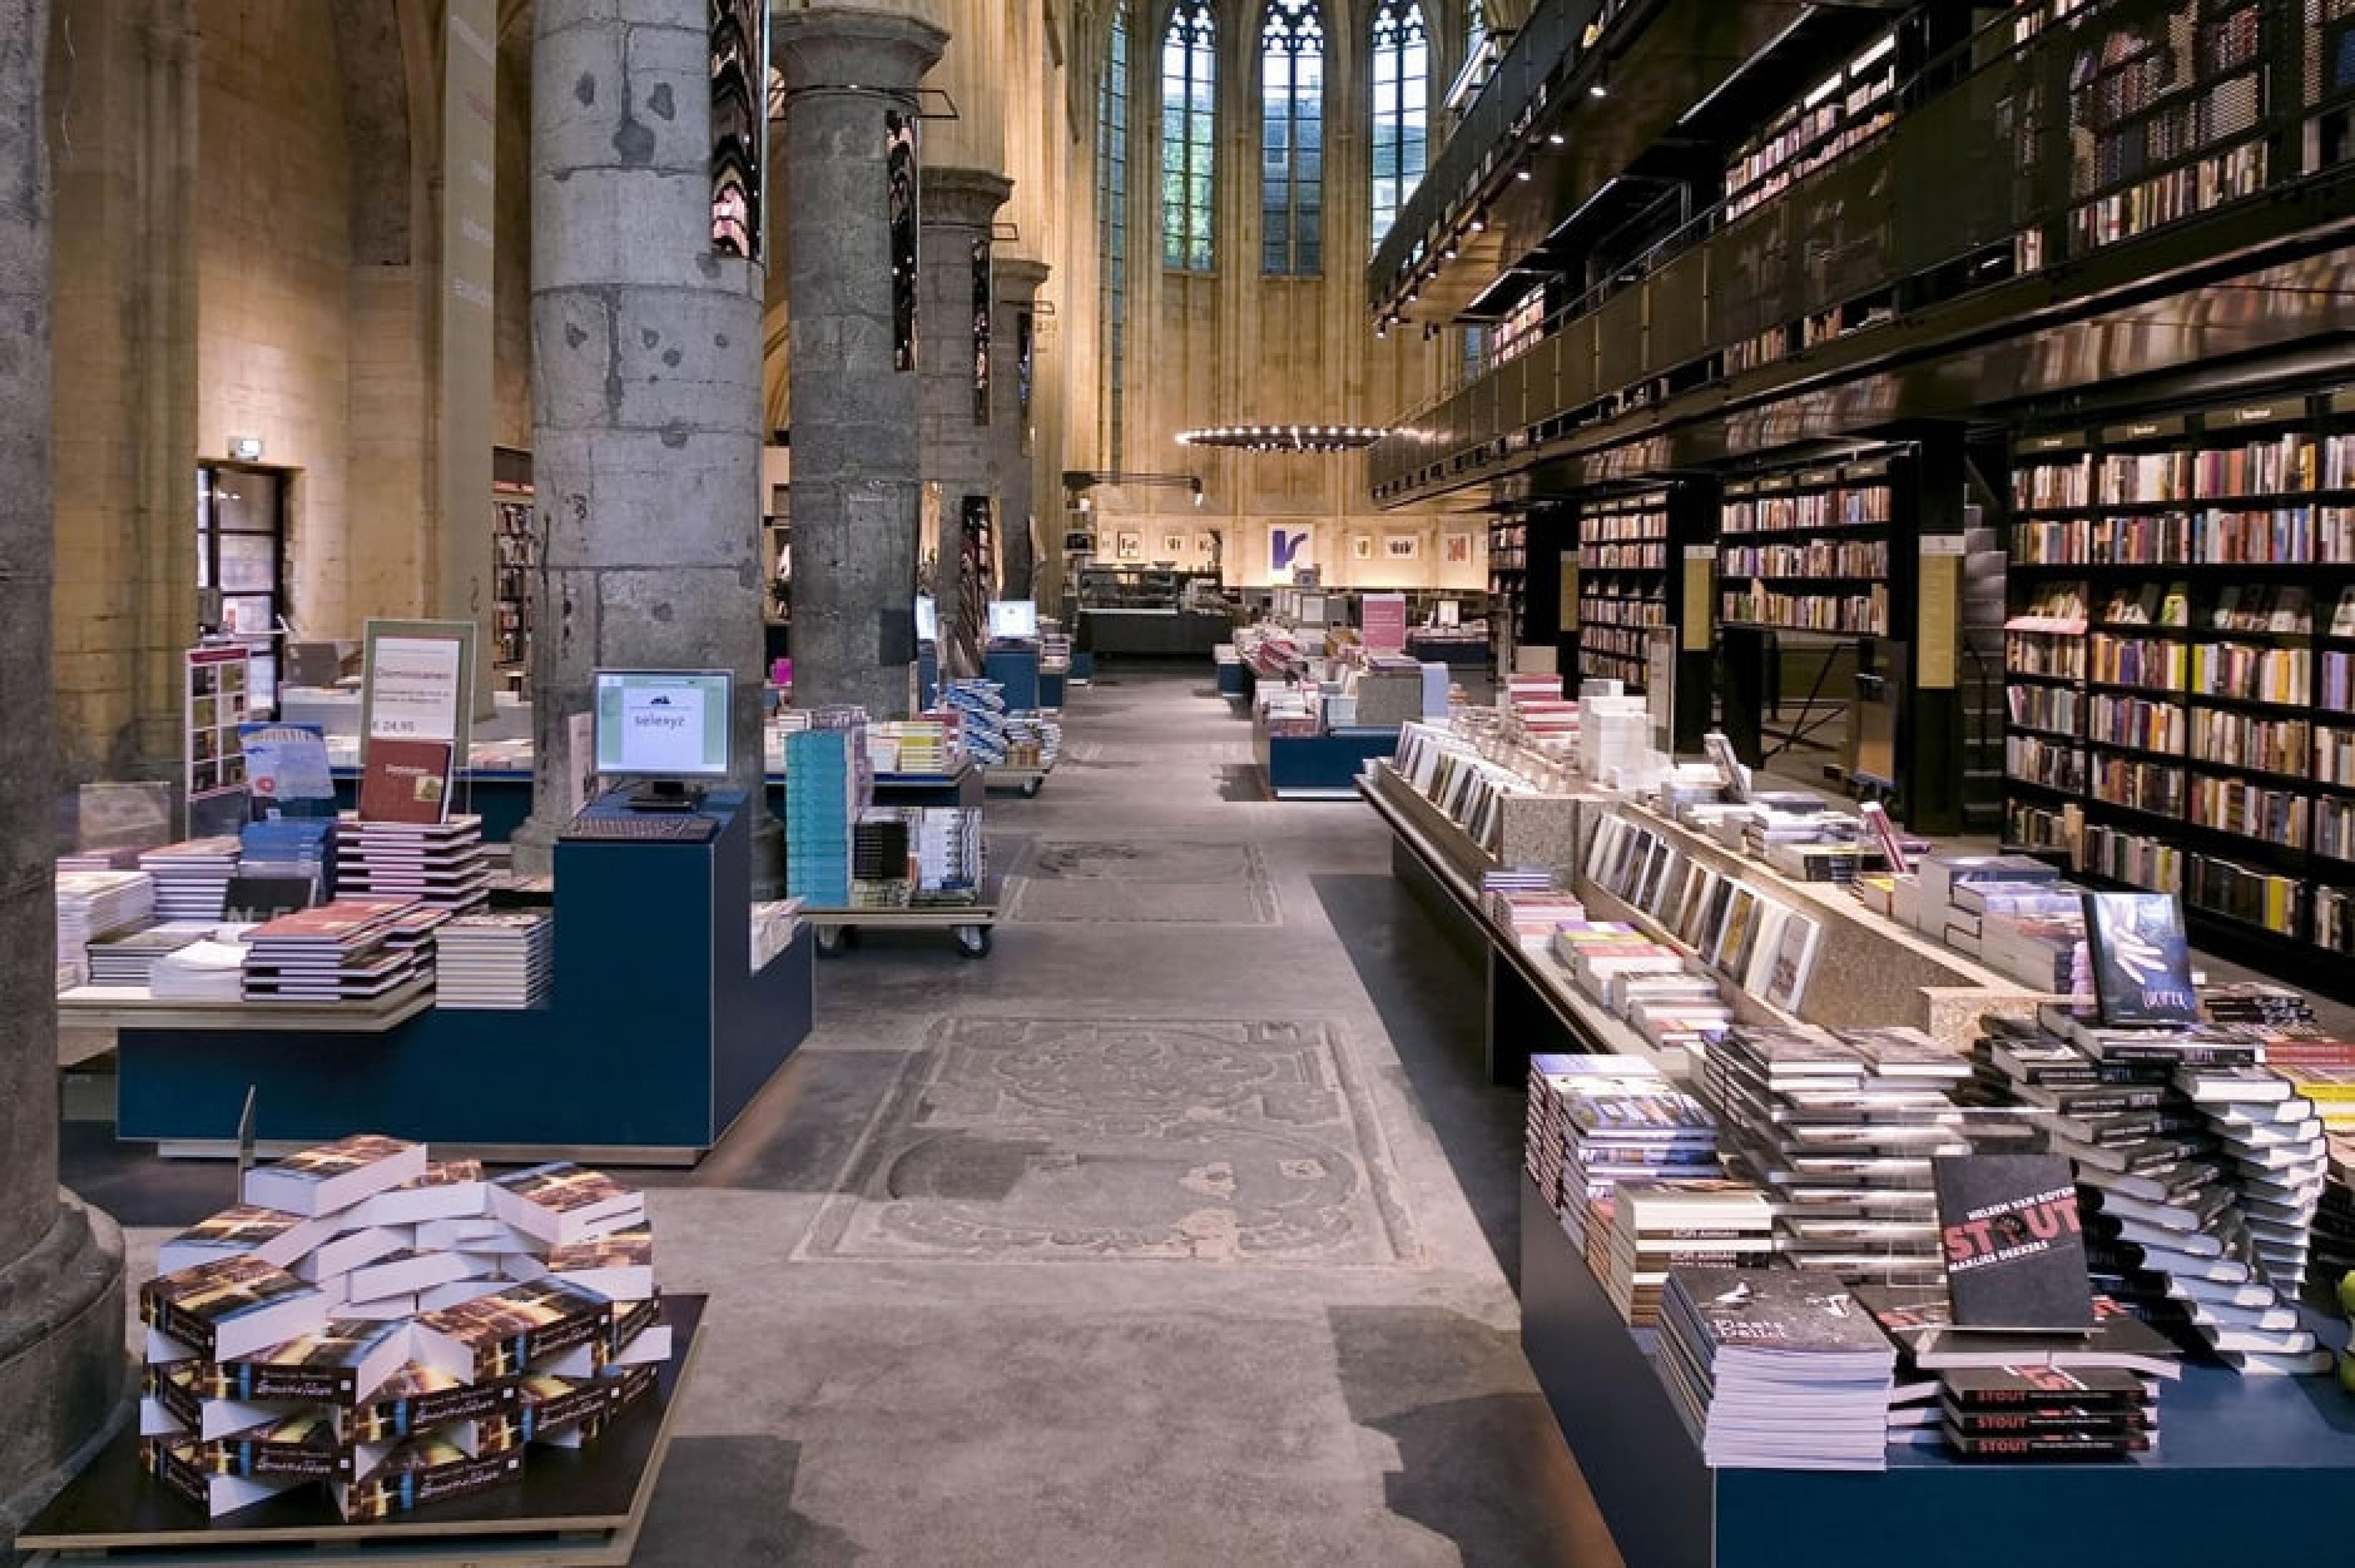 Interior View - Bookstore Dominicanen, Maastricht, Netherlands - Courtesy VVV Maastricht